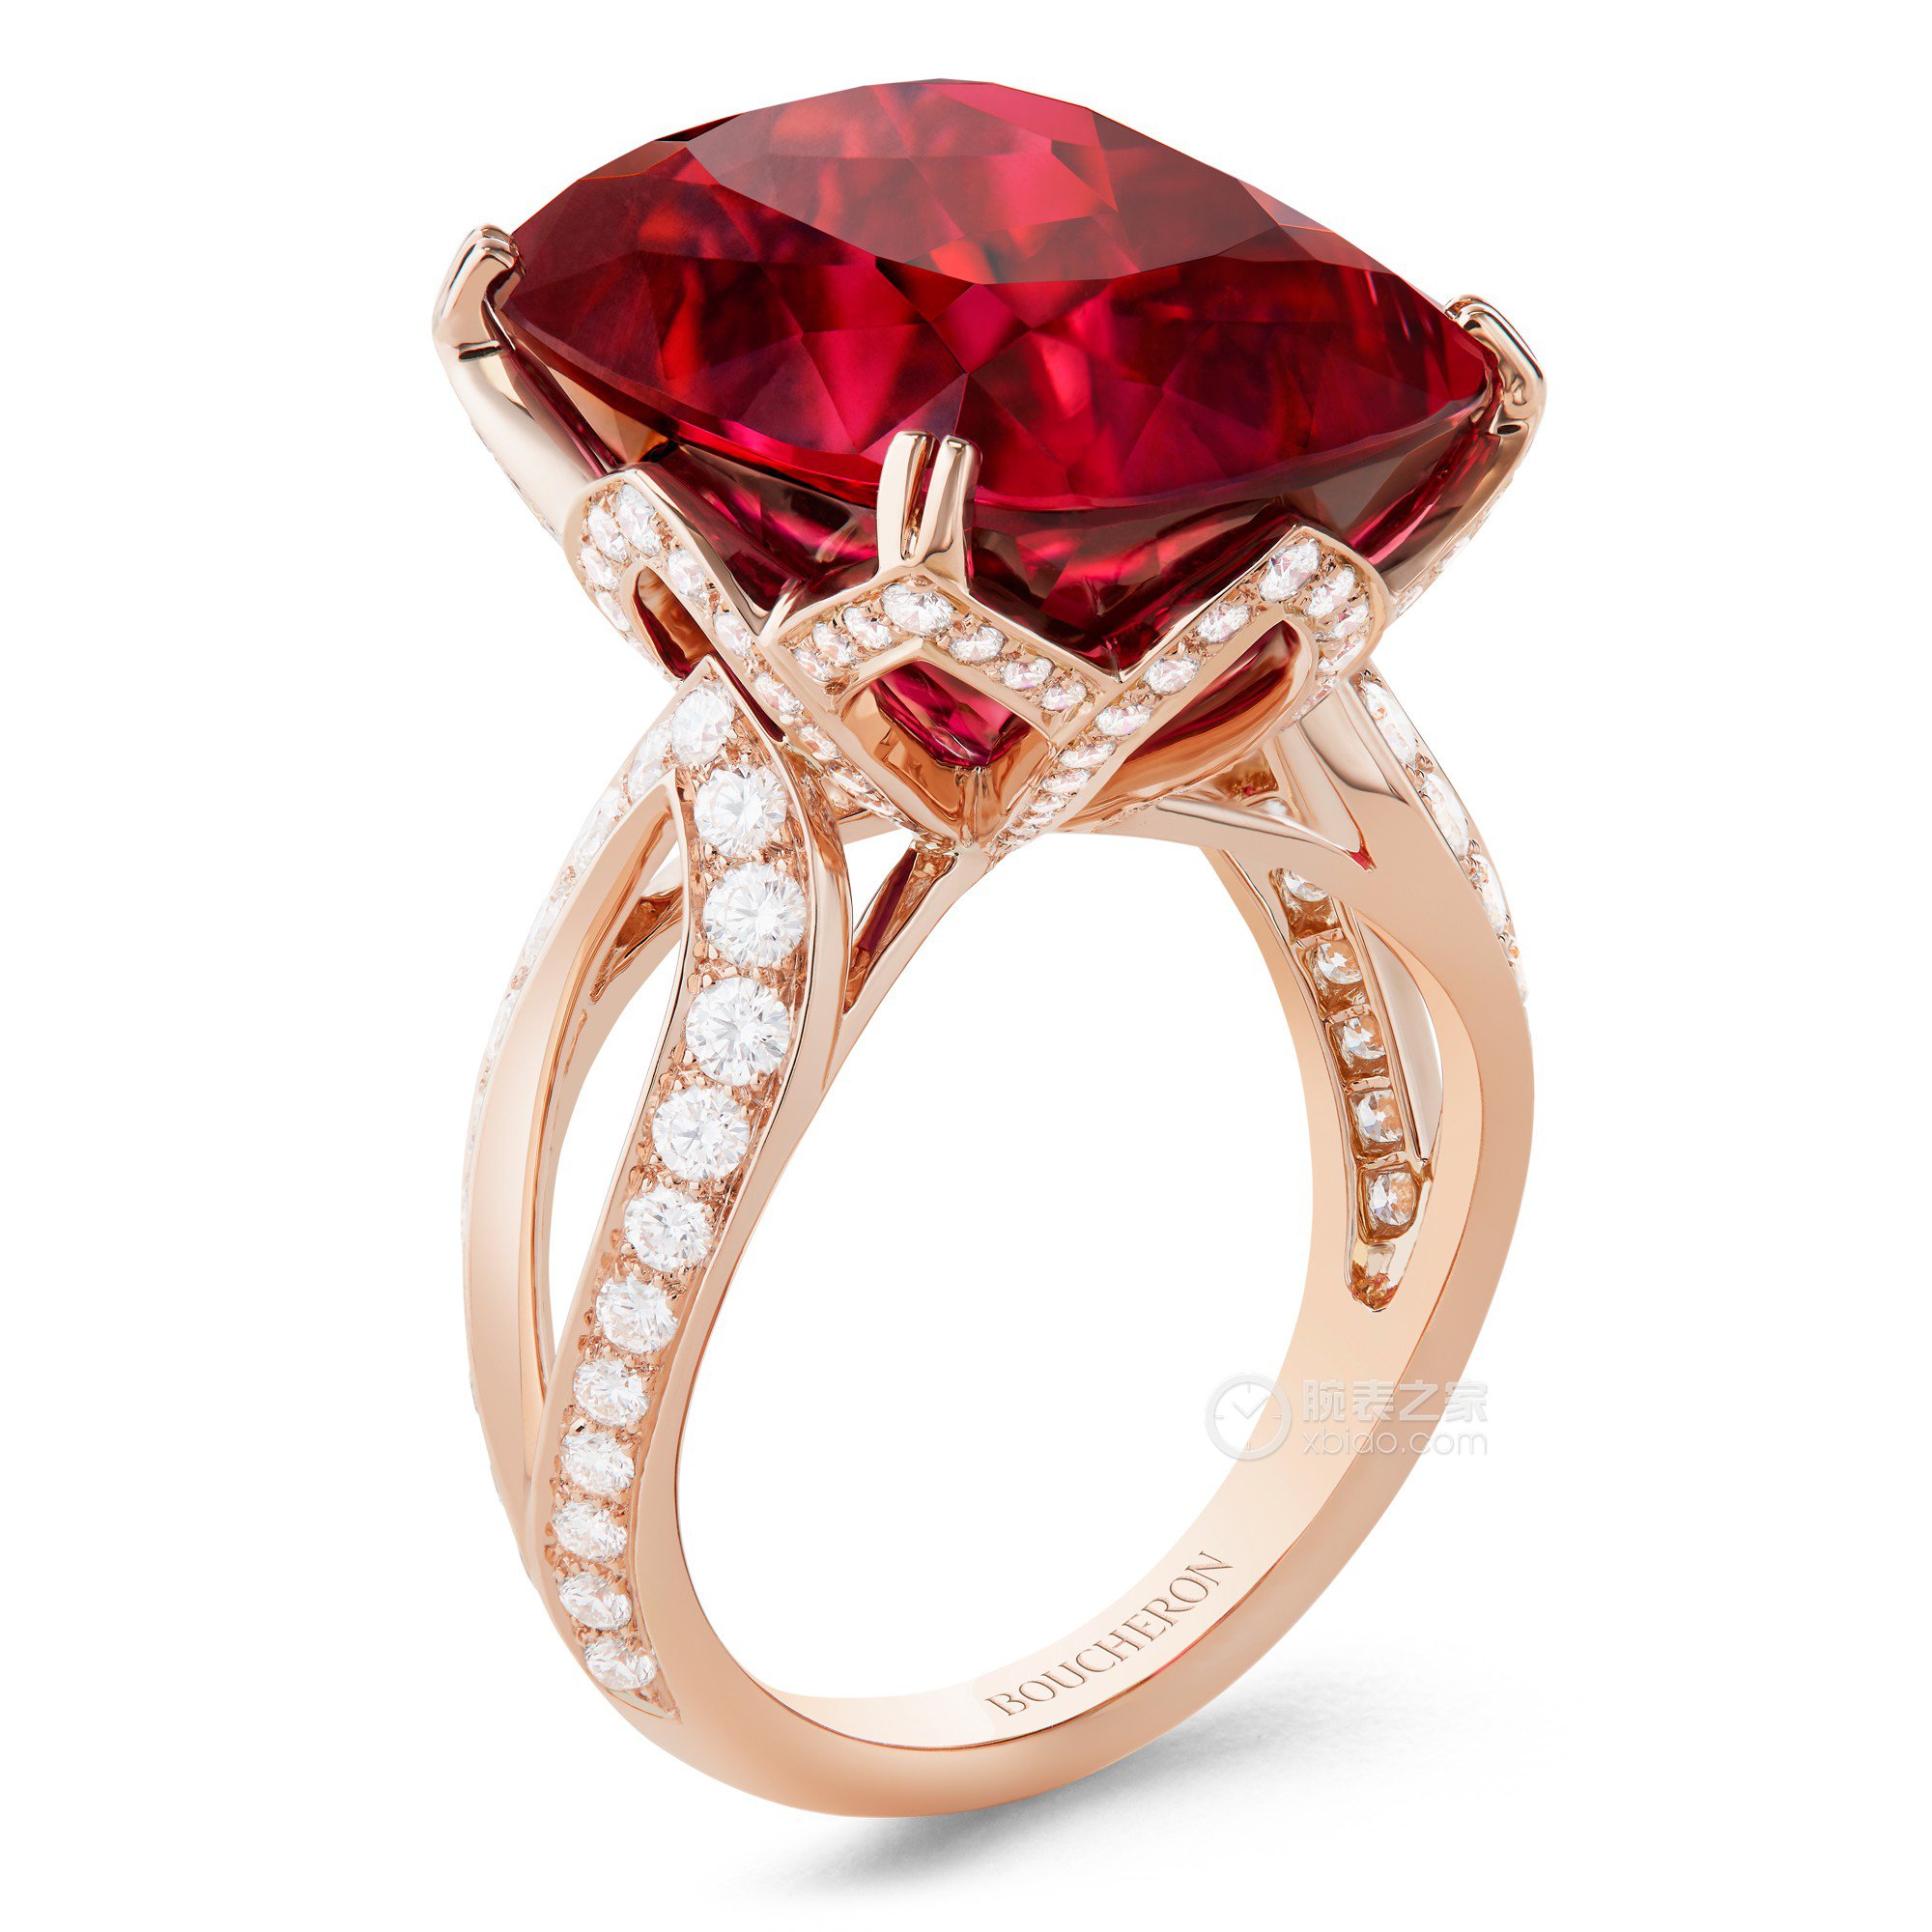 钻石玫瑰：Piaget Rose 钻石珠宝系列 | iDaily Jewelry · 每日珠宝杂志